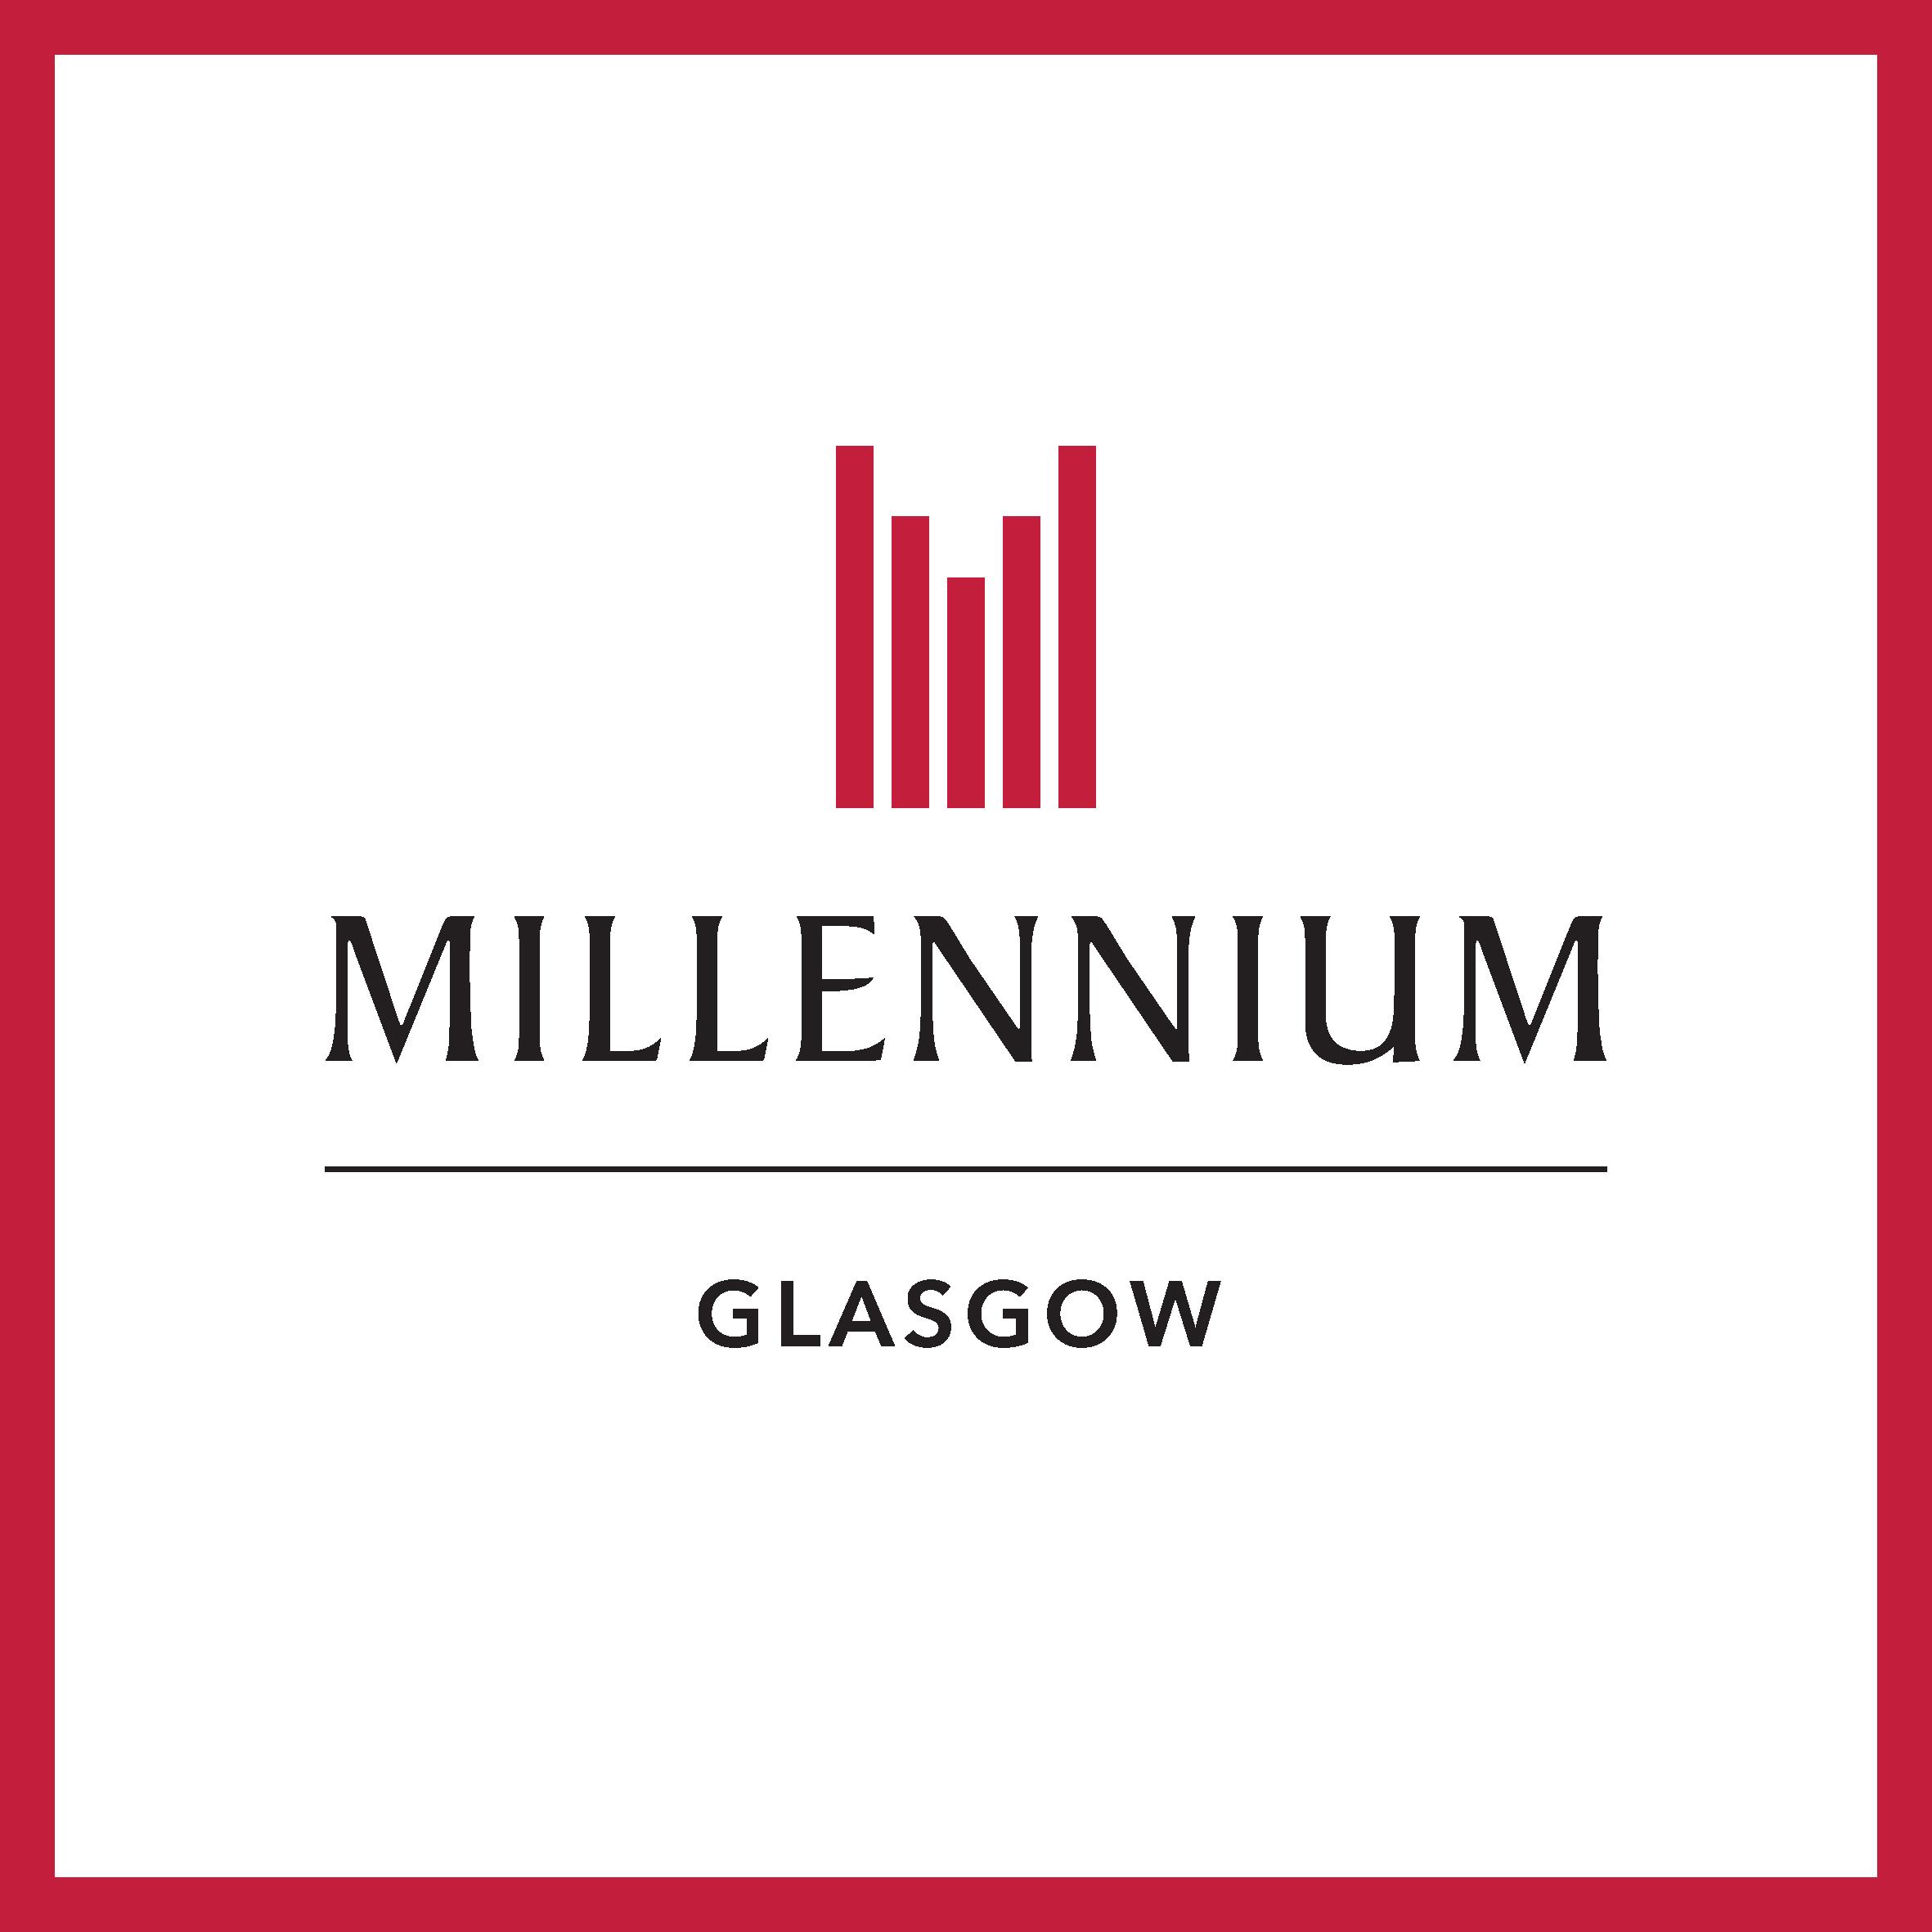 Millennium Hotel Glasgow